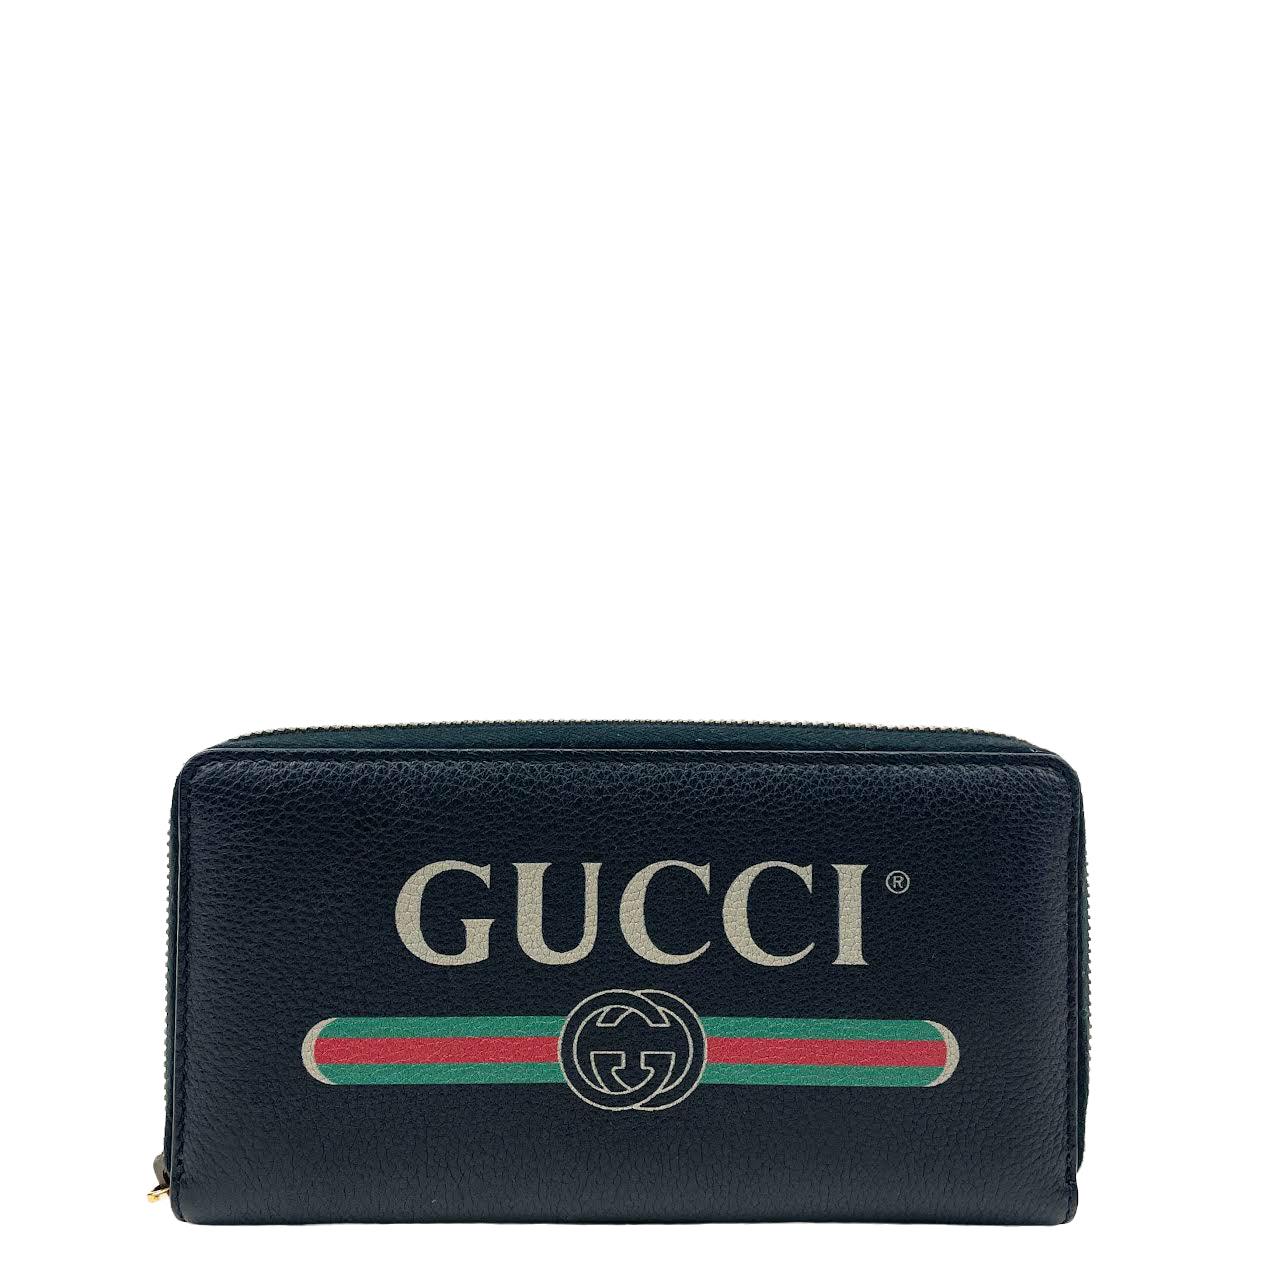 GUCCI Guccissima Checkbook Cover Black 91141